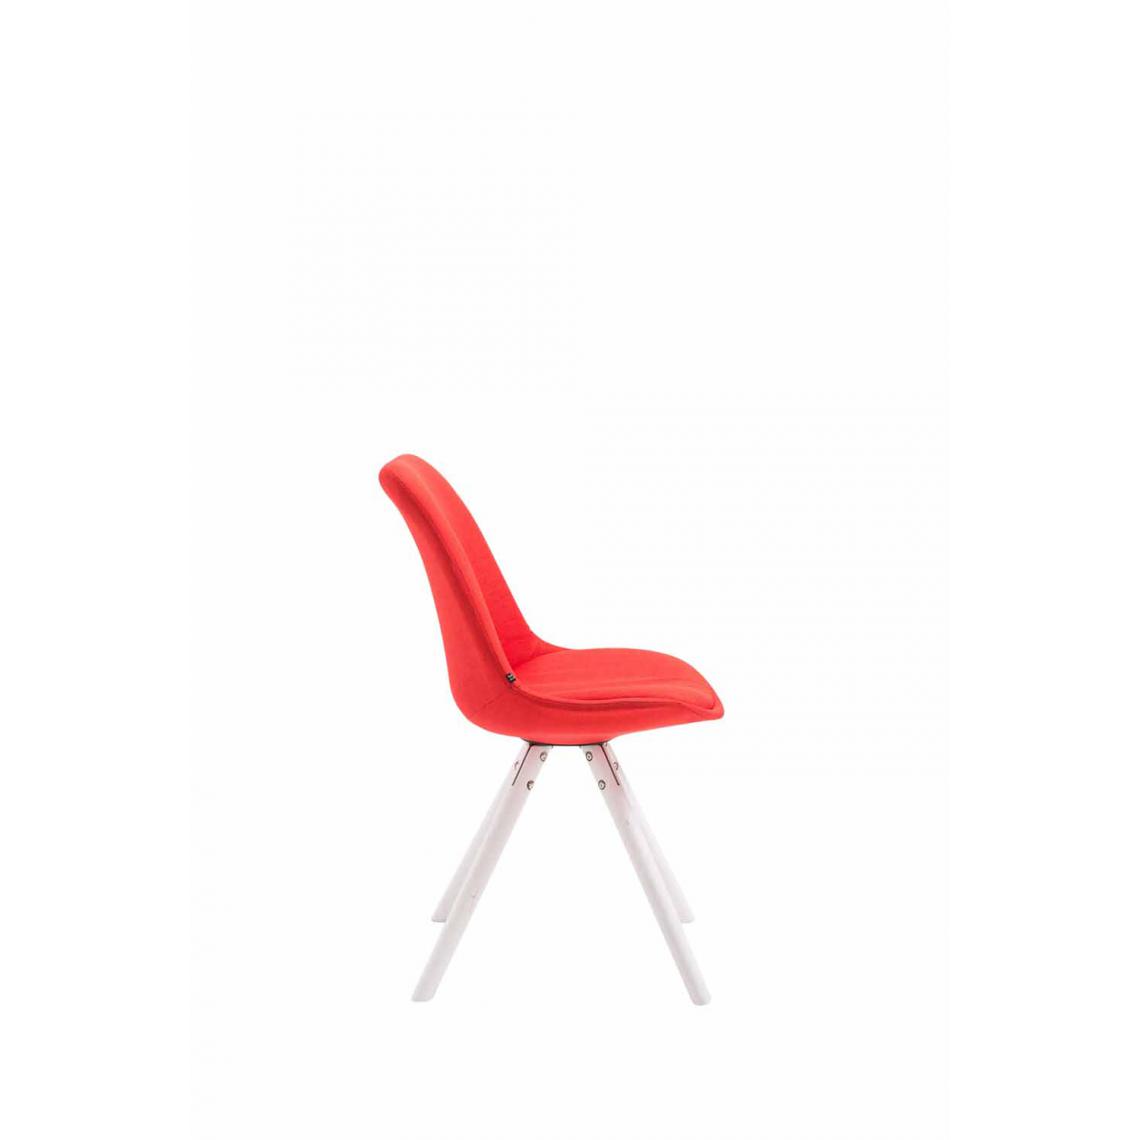 Icaverne - Admirable Chaise visiteur famille Katmandou tissu rond blanc couleur rouge - Chaises